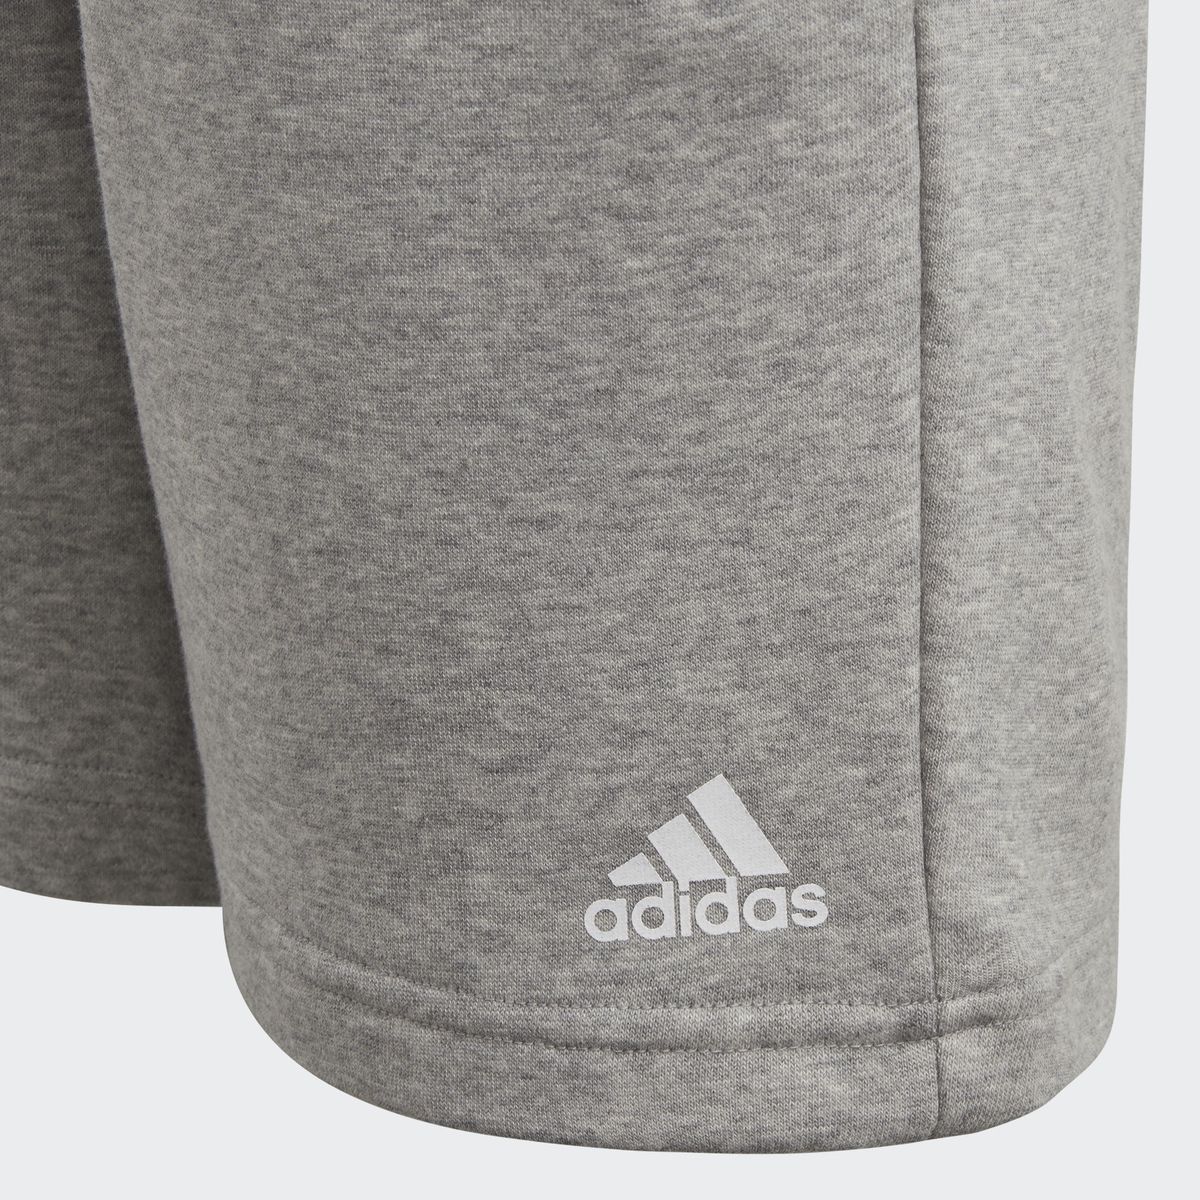    Adidas Yb Logo Short, : . CF6534.  164